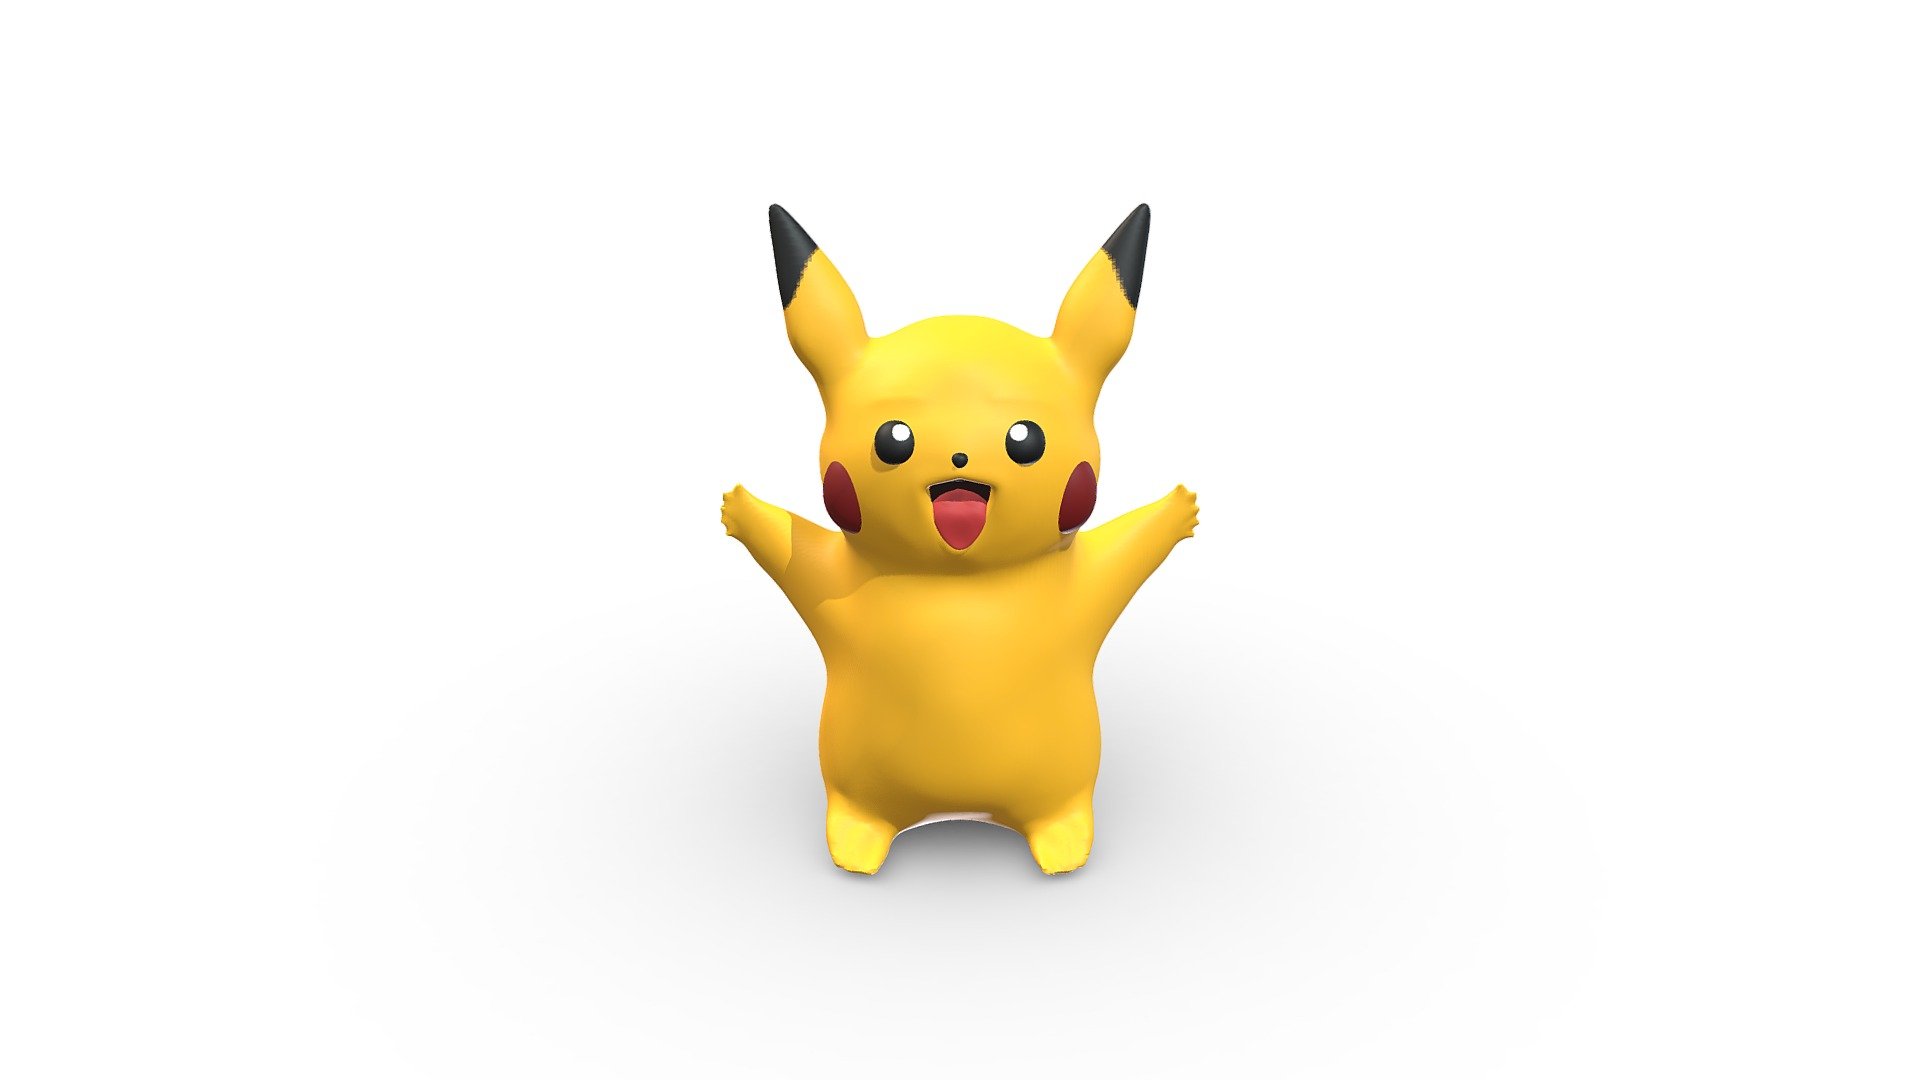 First iPad Pro sclupt of a Pikachu from Pokémon - Pokémon Pikachu - Buy Royalty Free 3D model by chrisprice 3d model